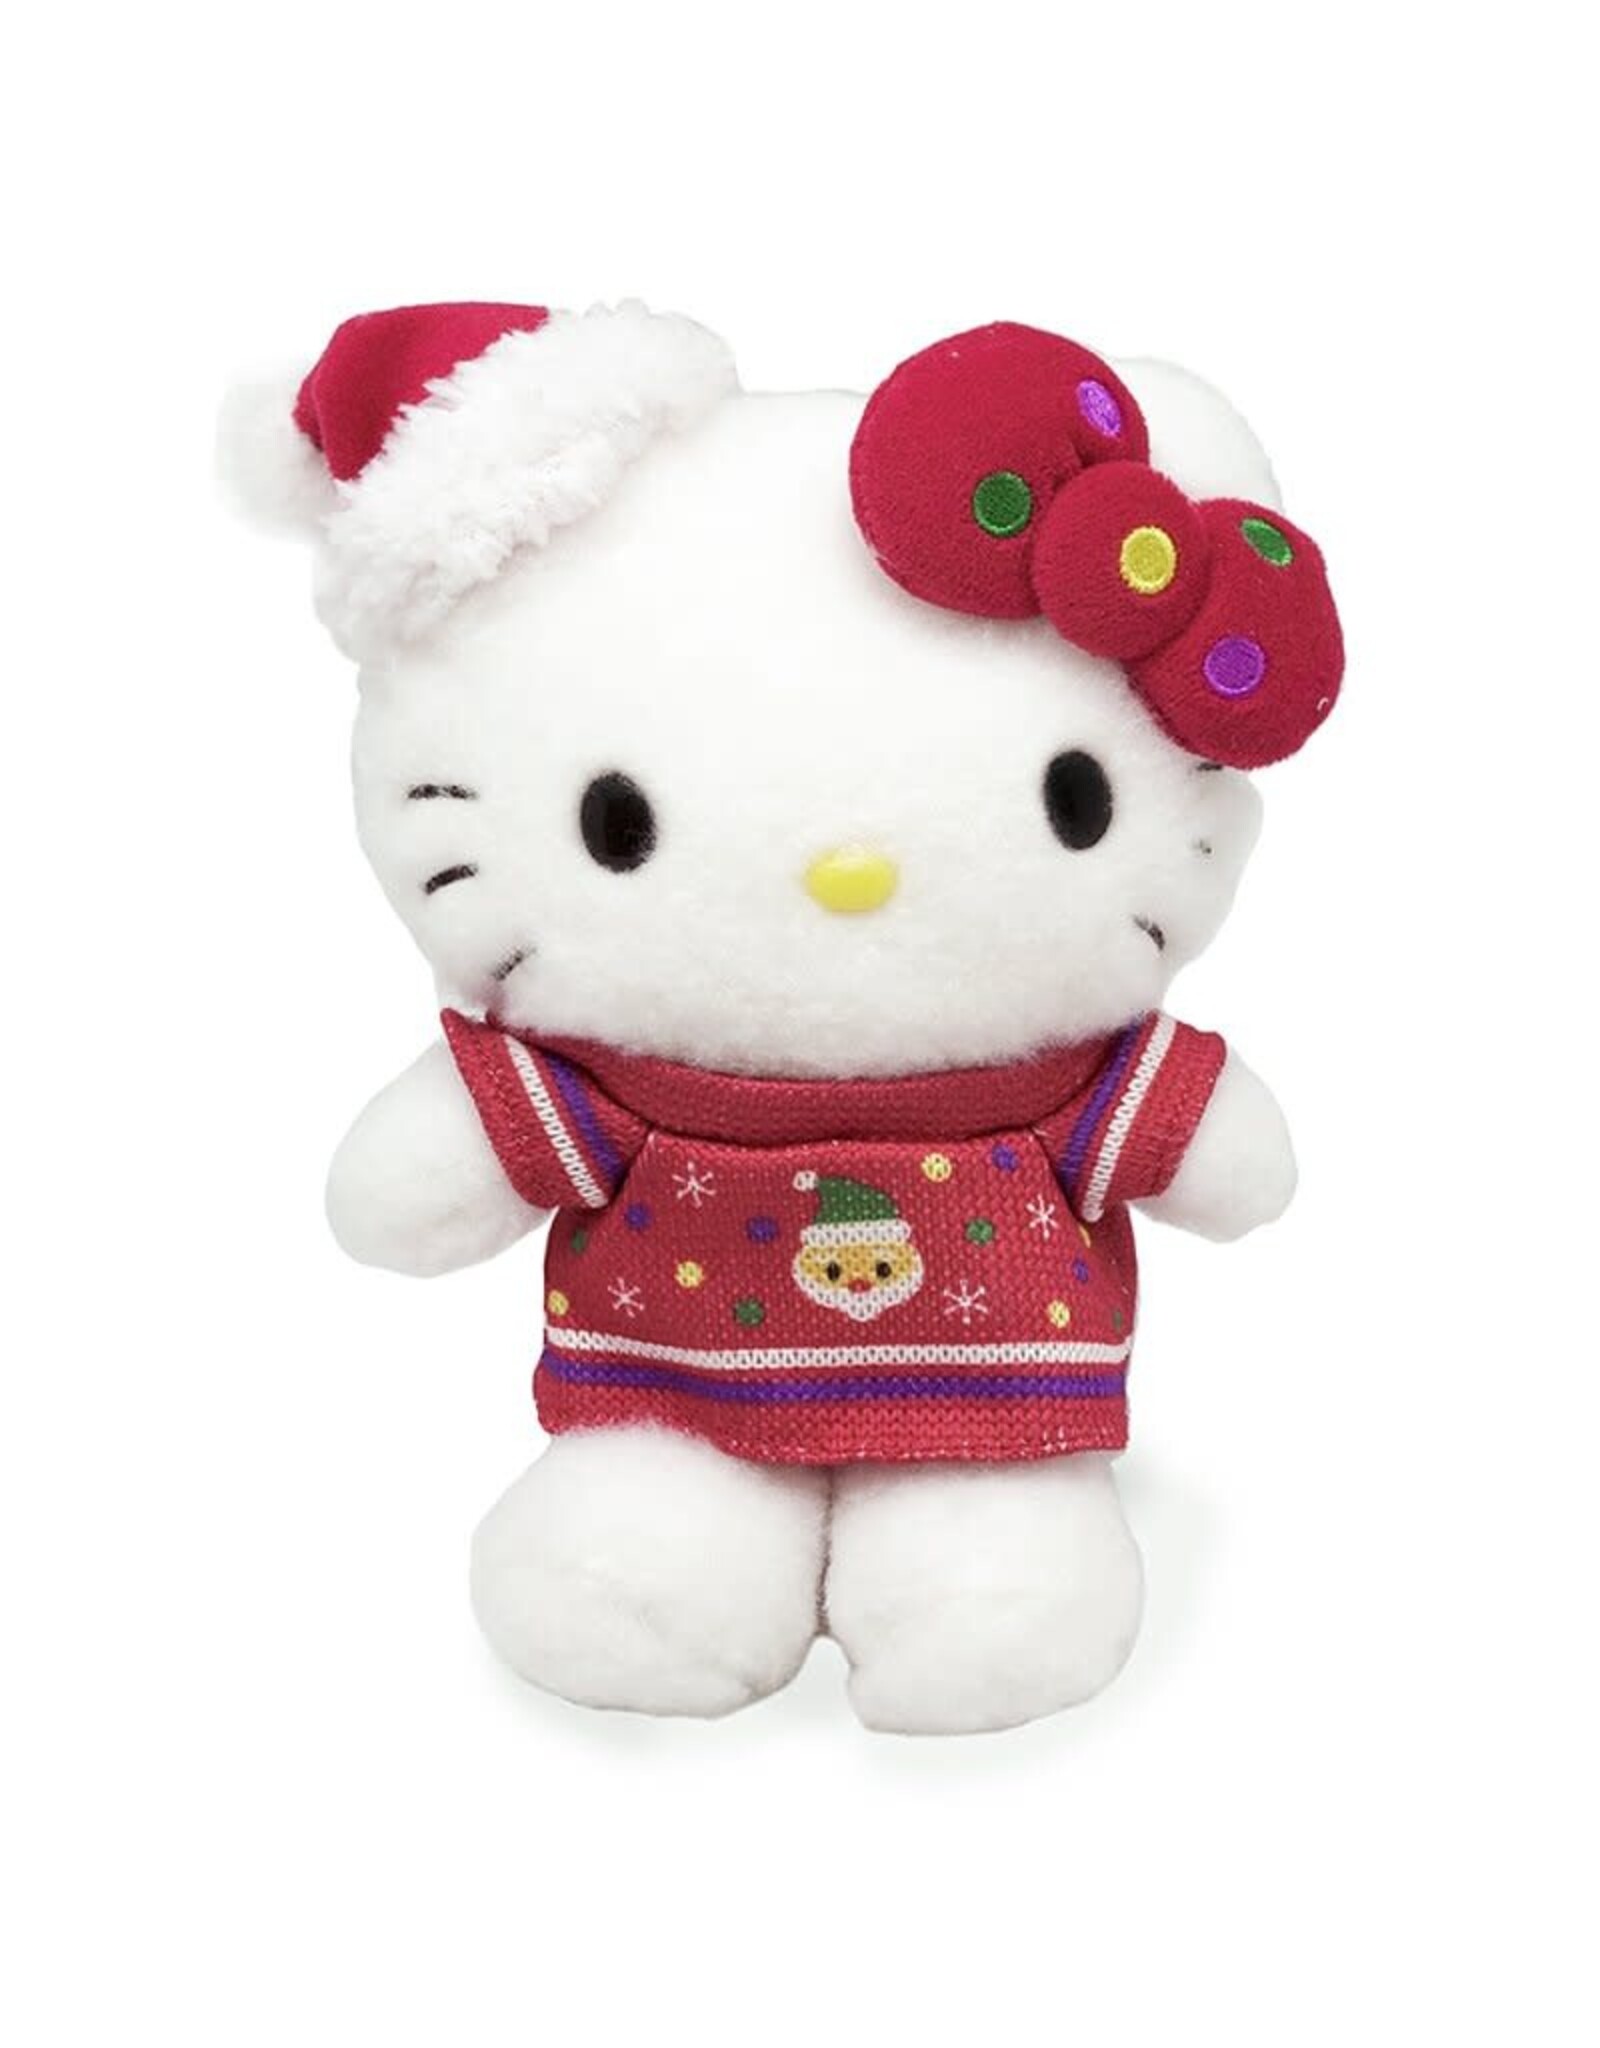 Sanrio Christmas Plush - Hello Kitty